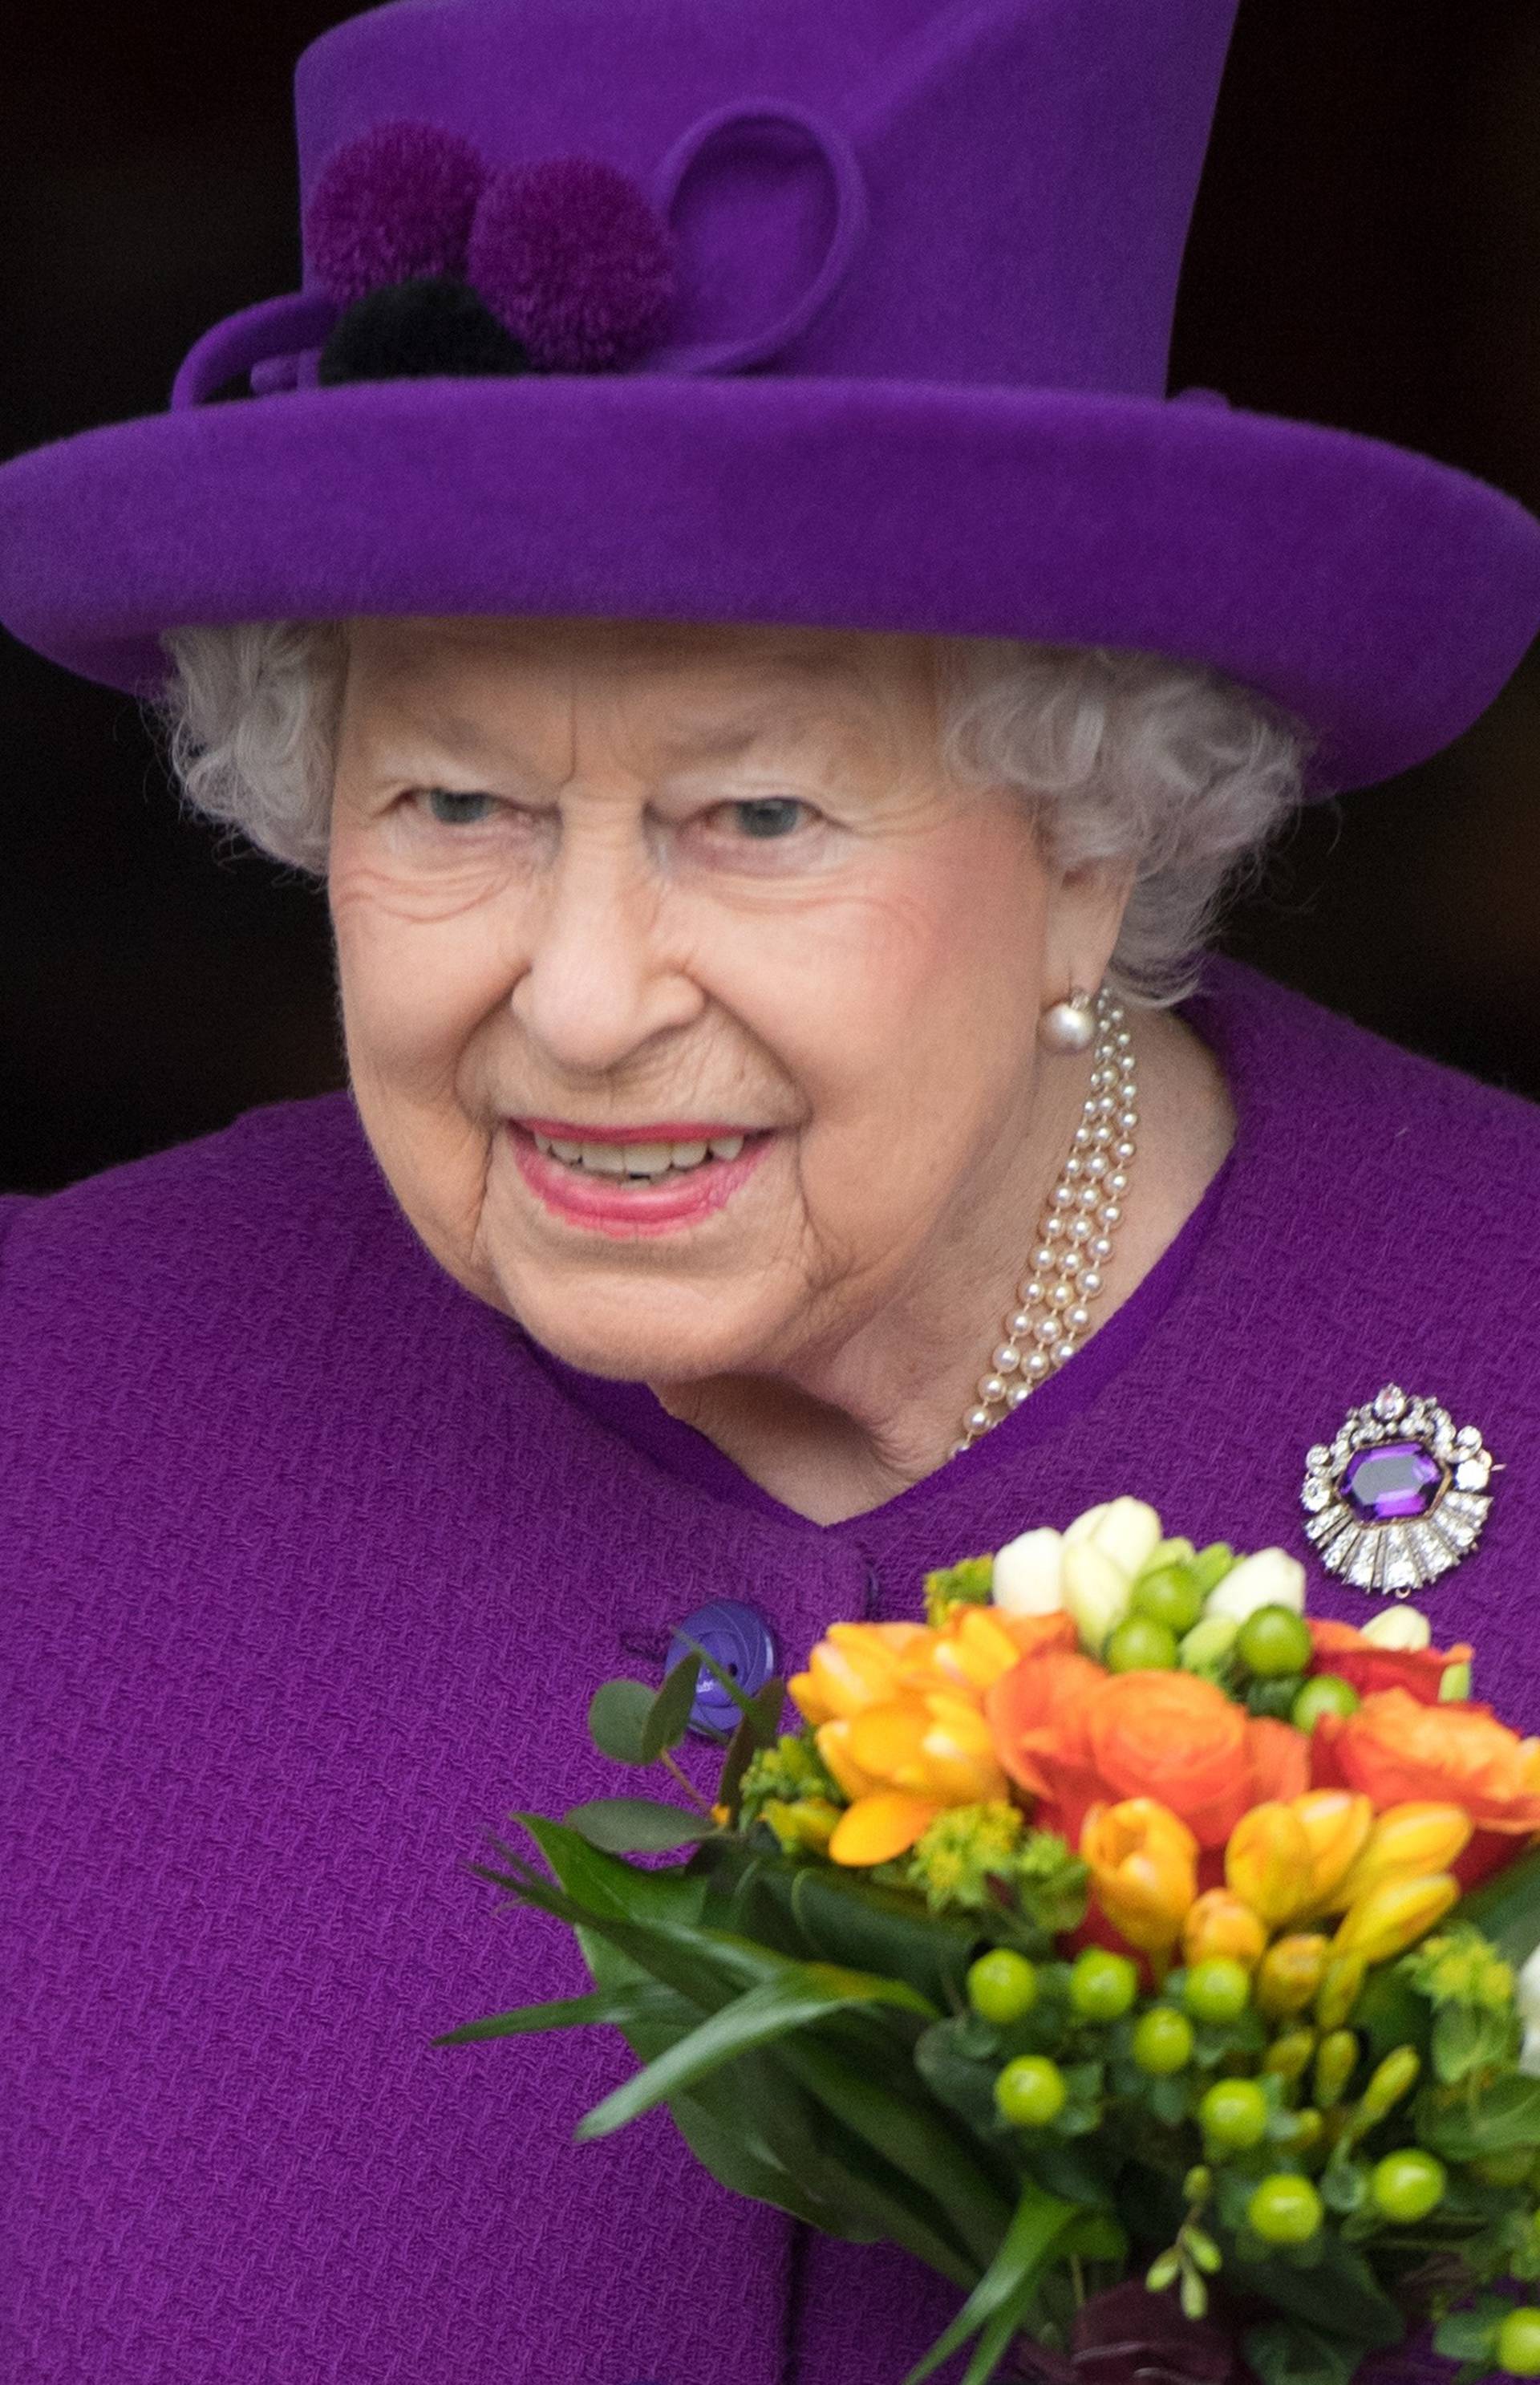 Royal visit to Windsor